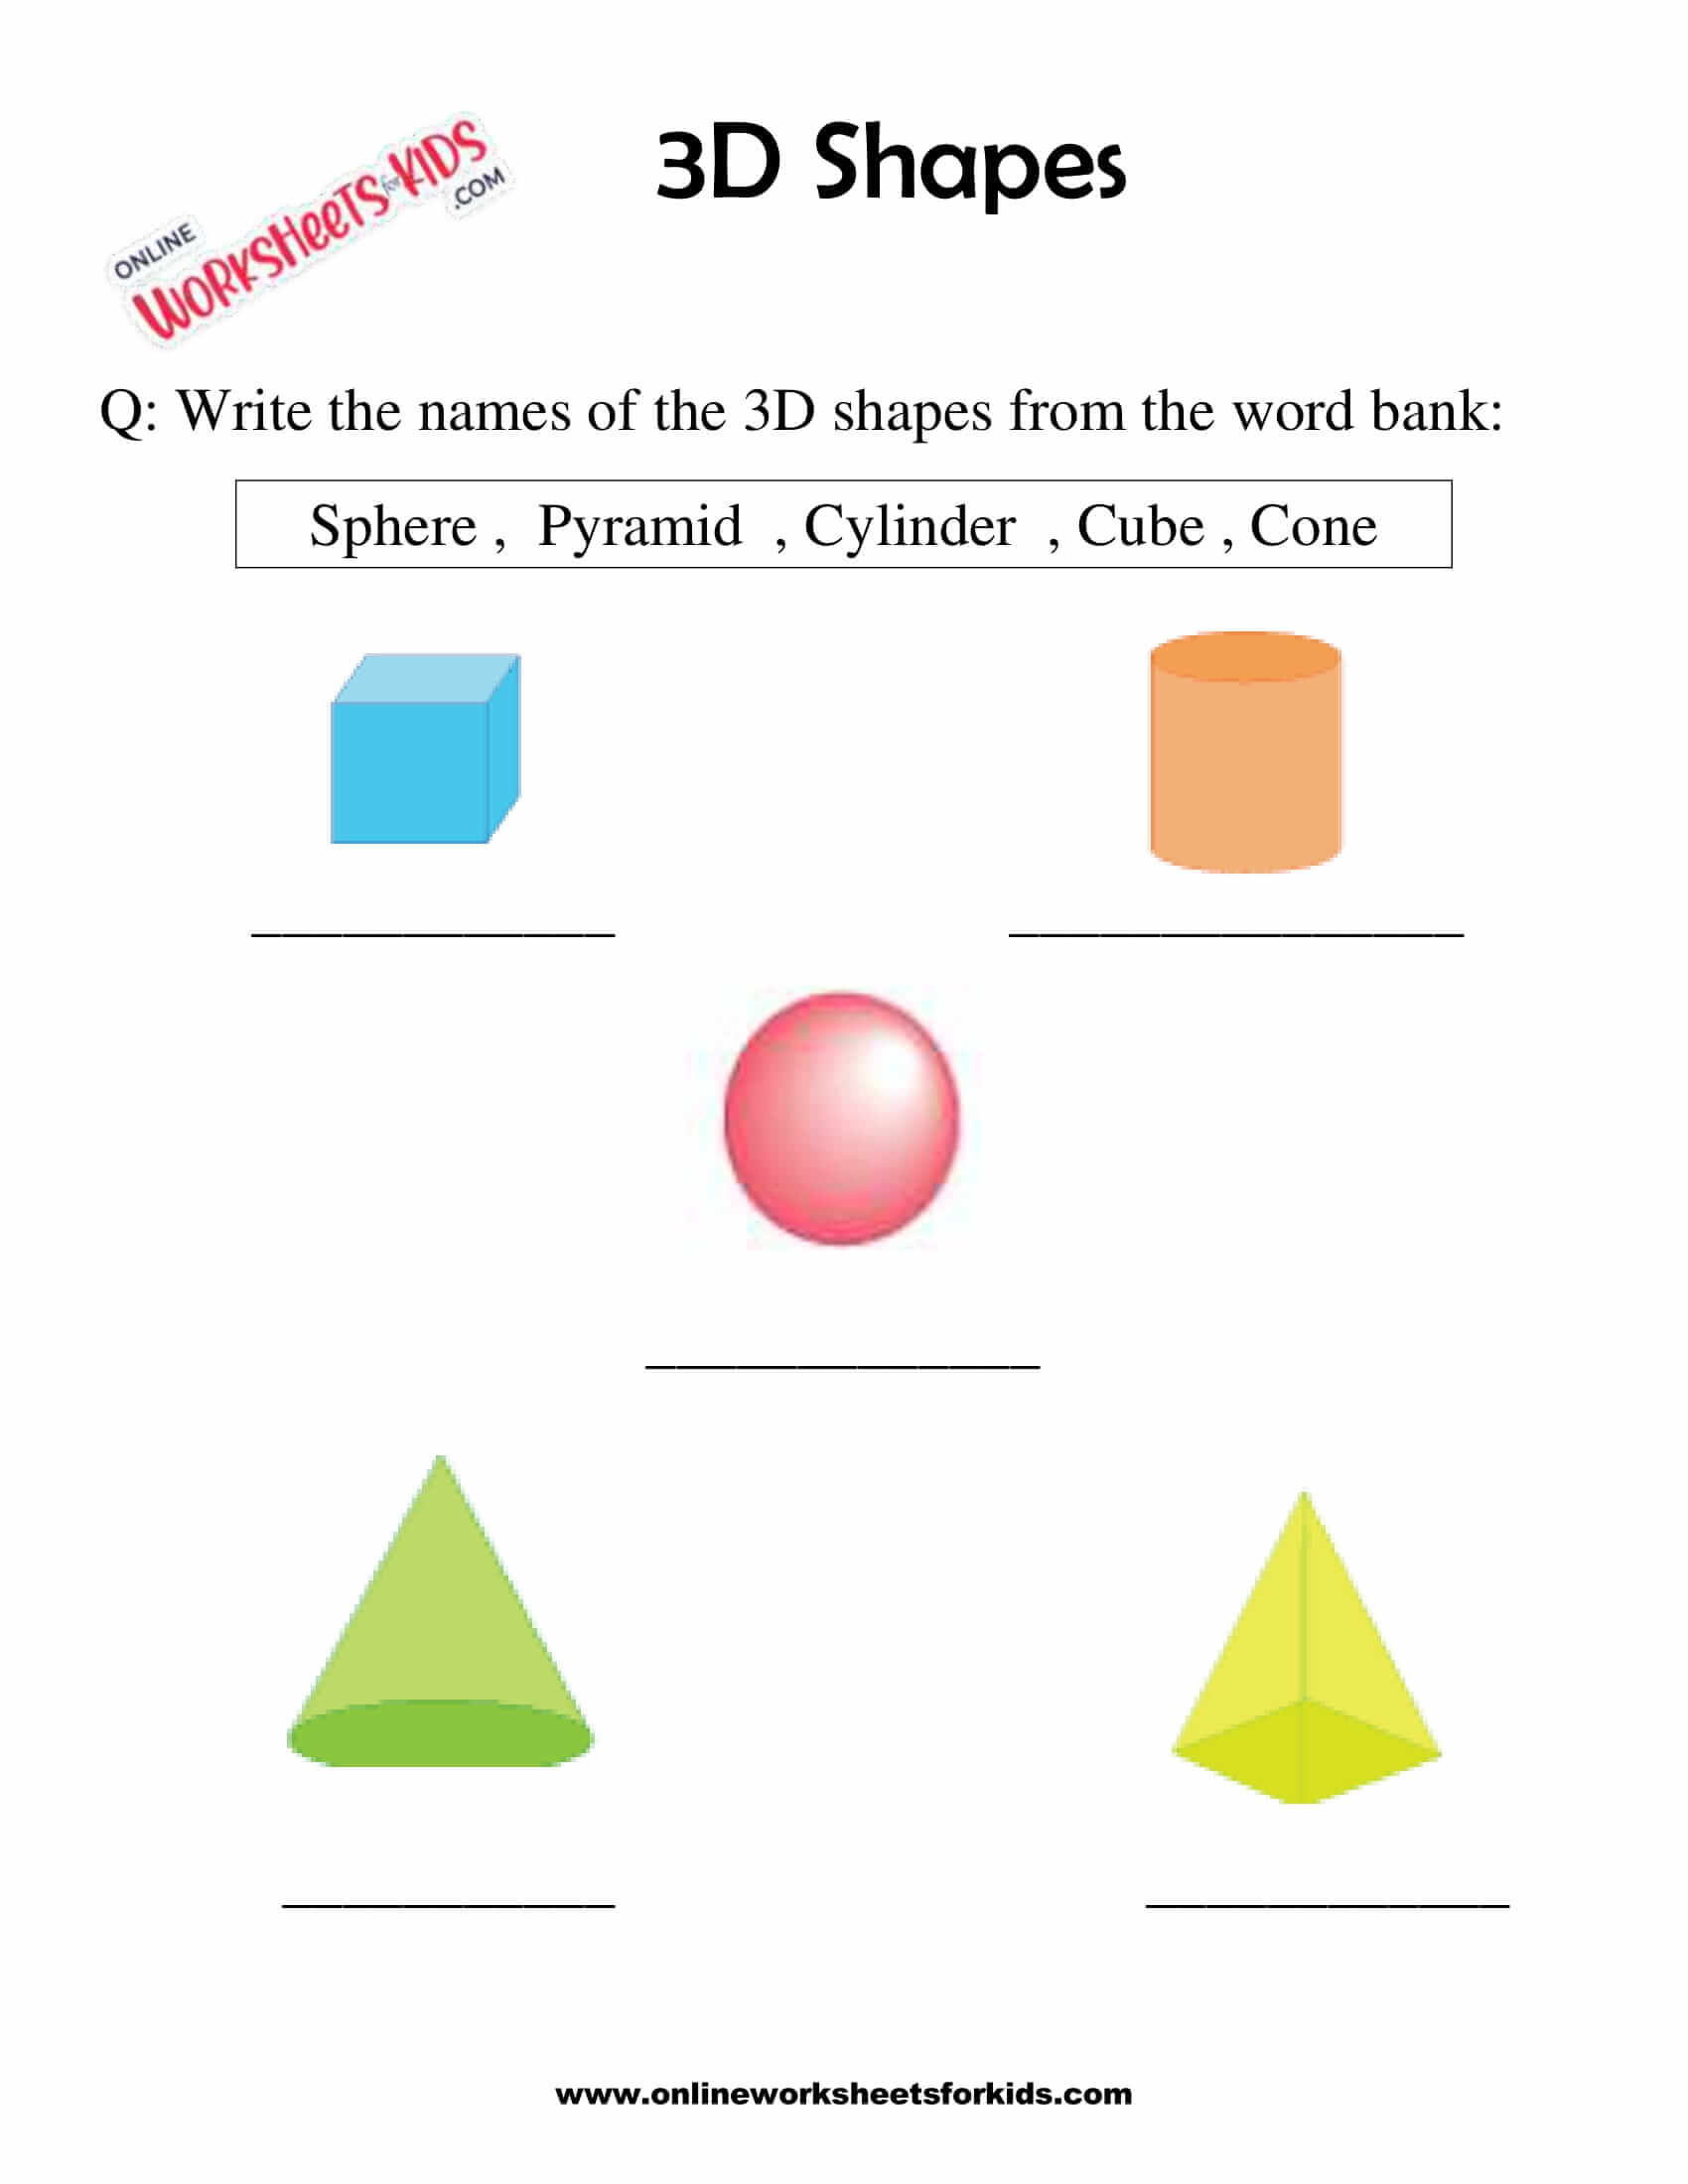 3d-shapes-worksheets-1st-grade-2